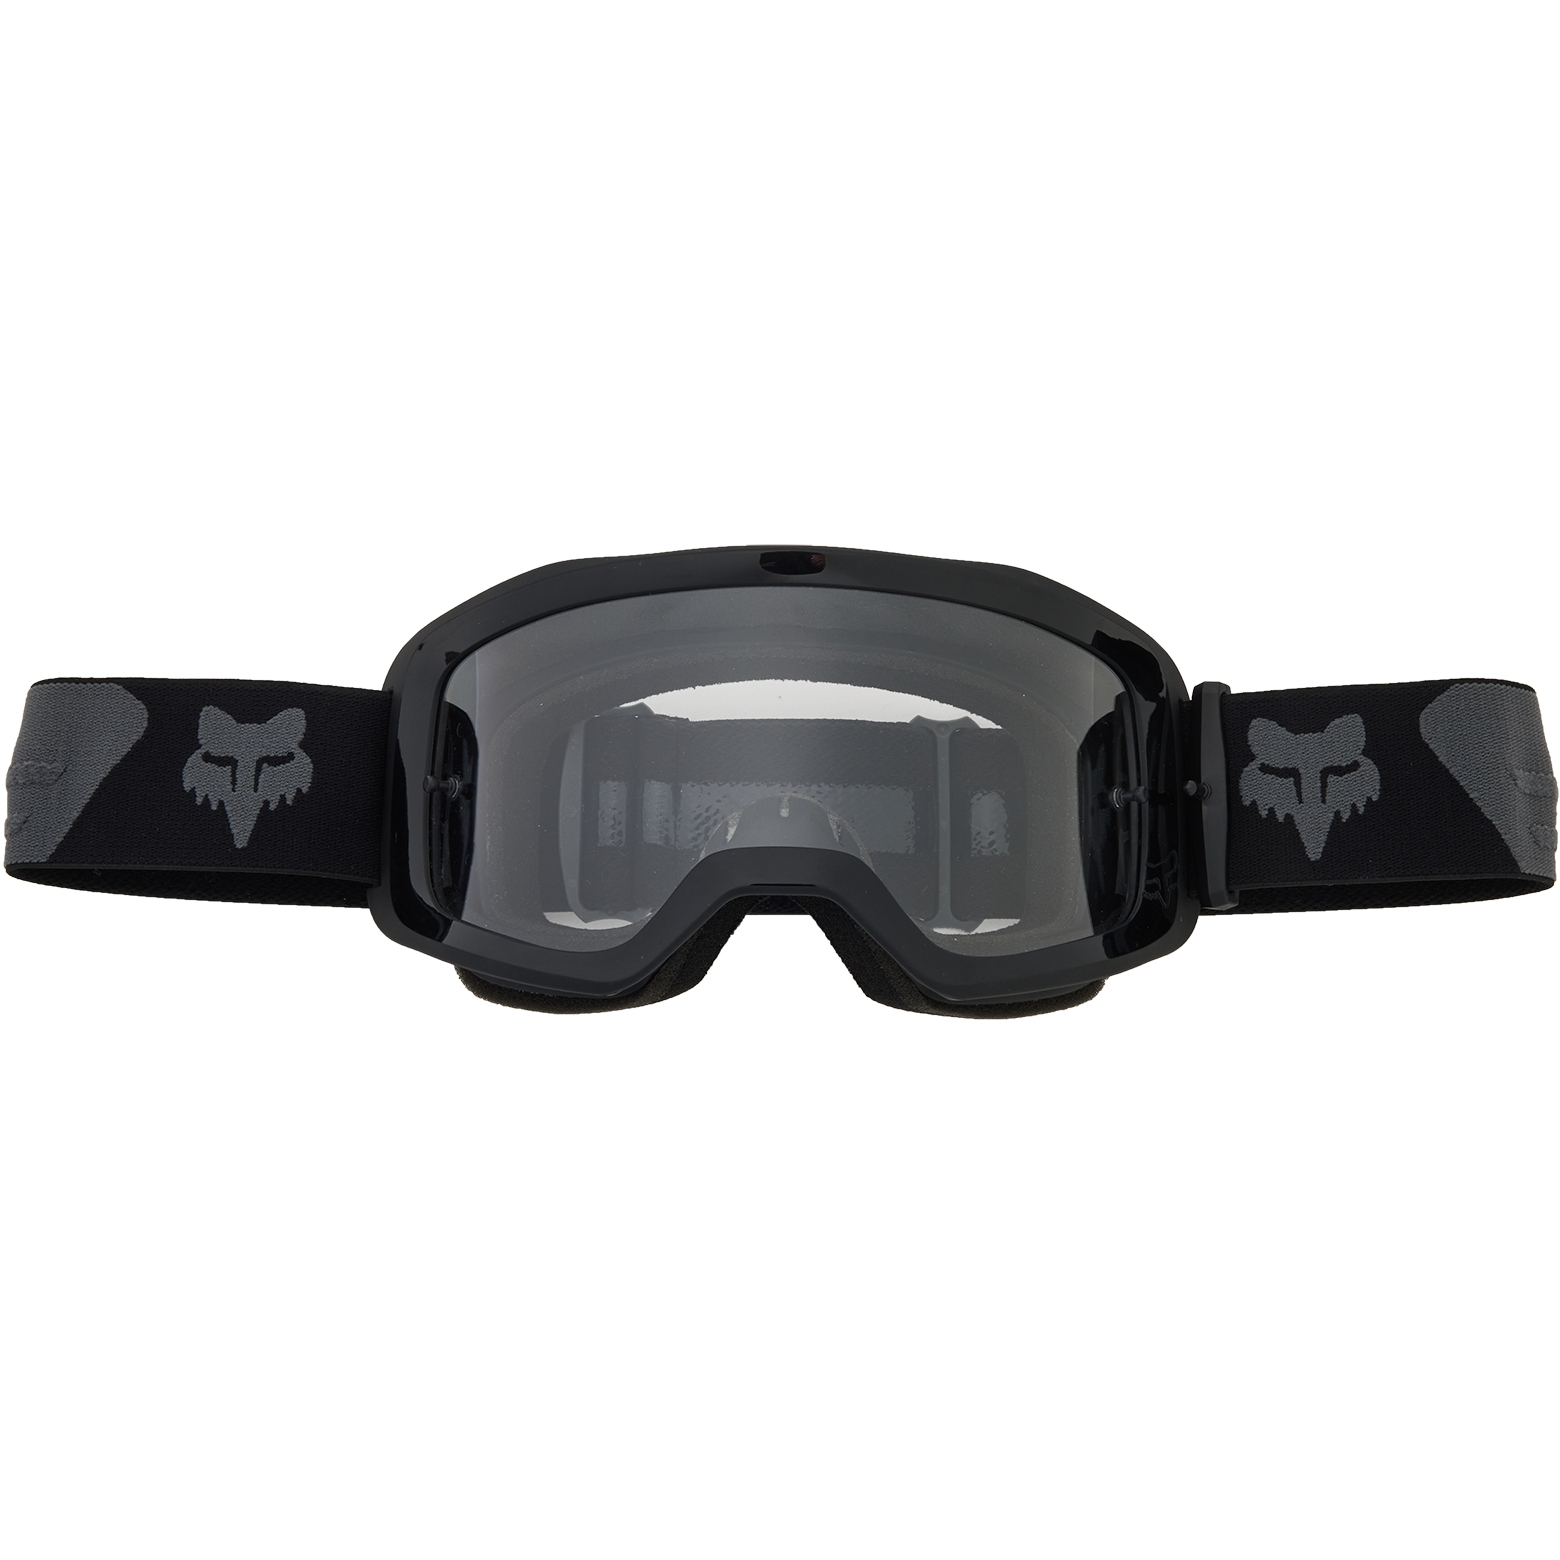 Produktbild von FOX Main Core Goggle - schwarz/grau